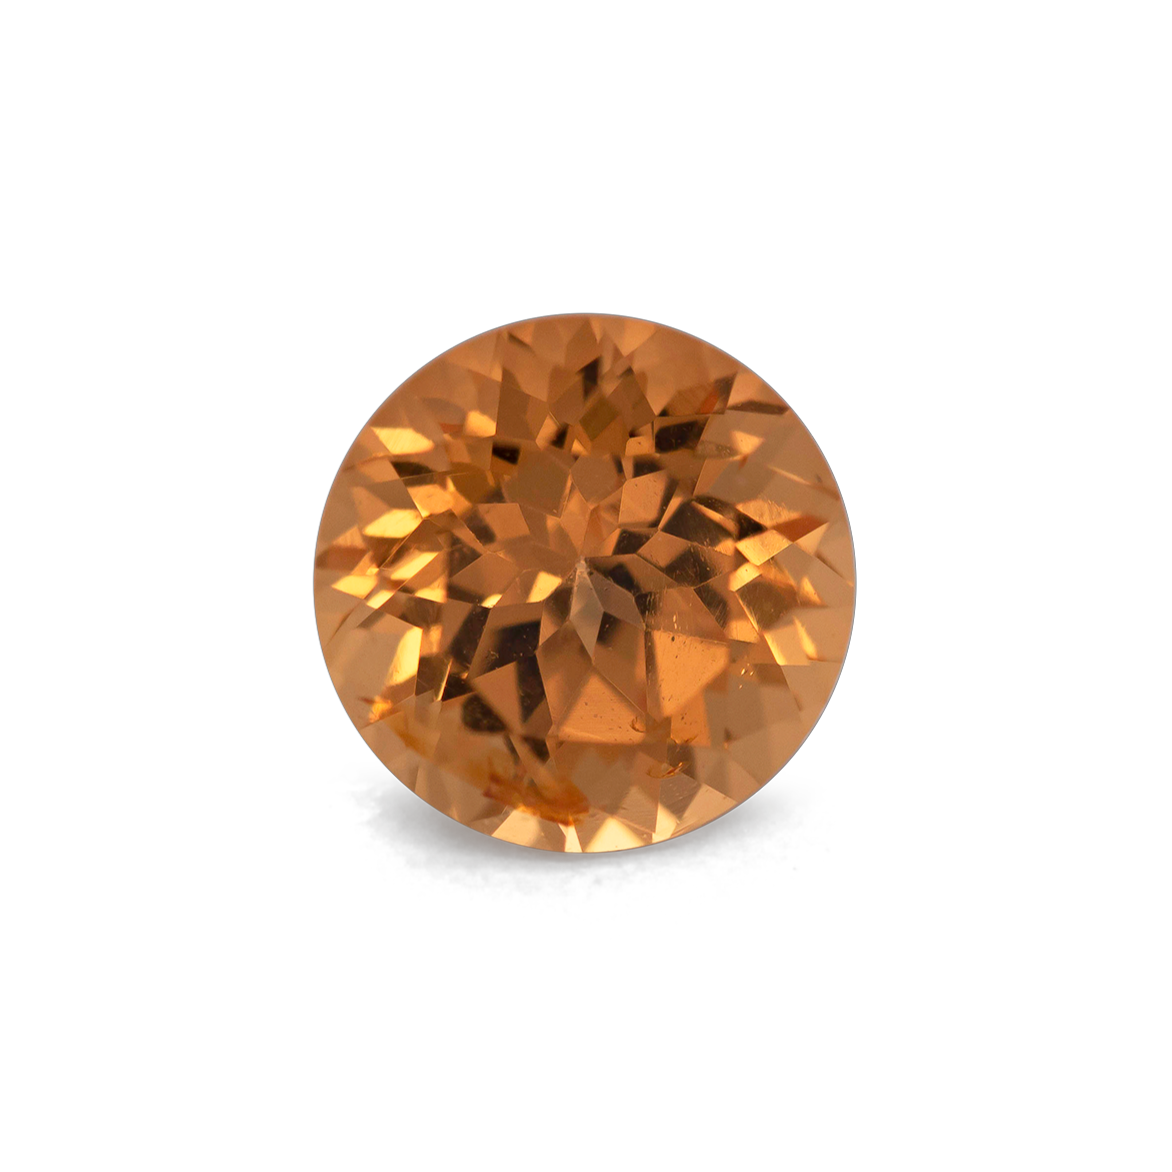 Mandarin Granat - orange, rund, 4x4 mm, 0,35 cts, Nr. MG99007